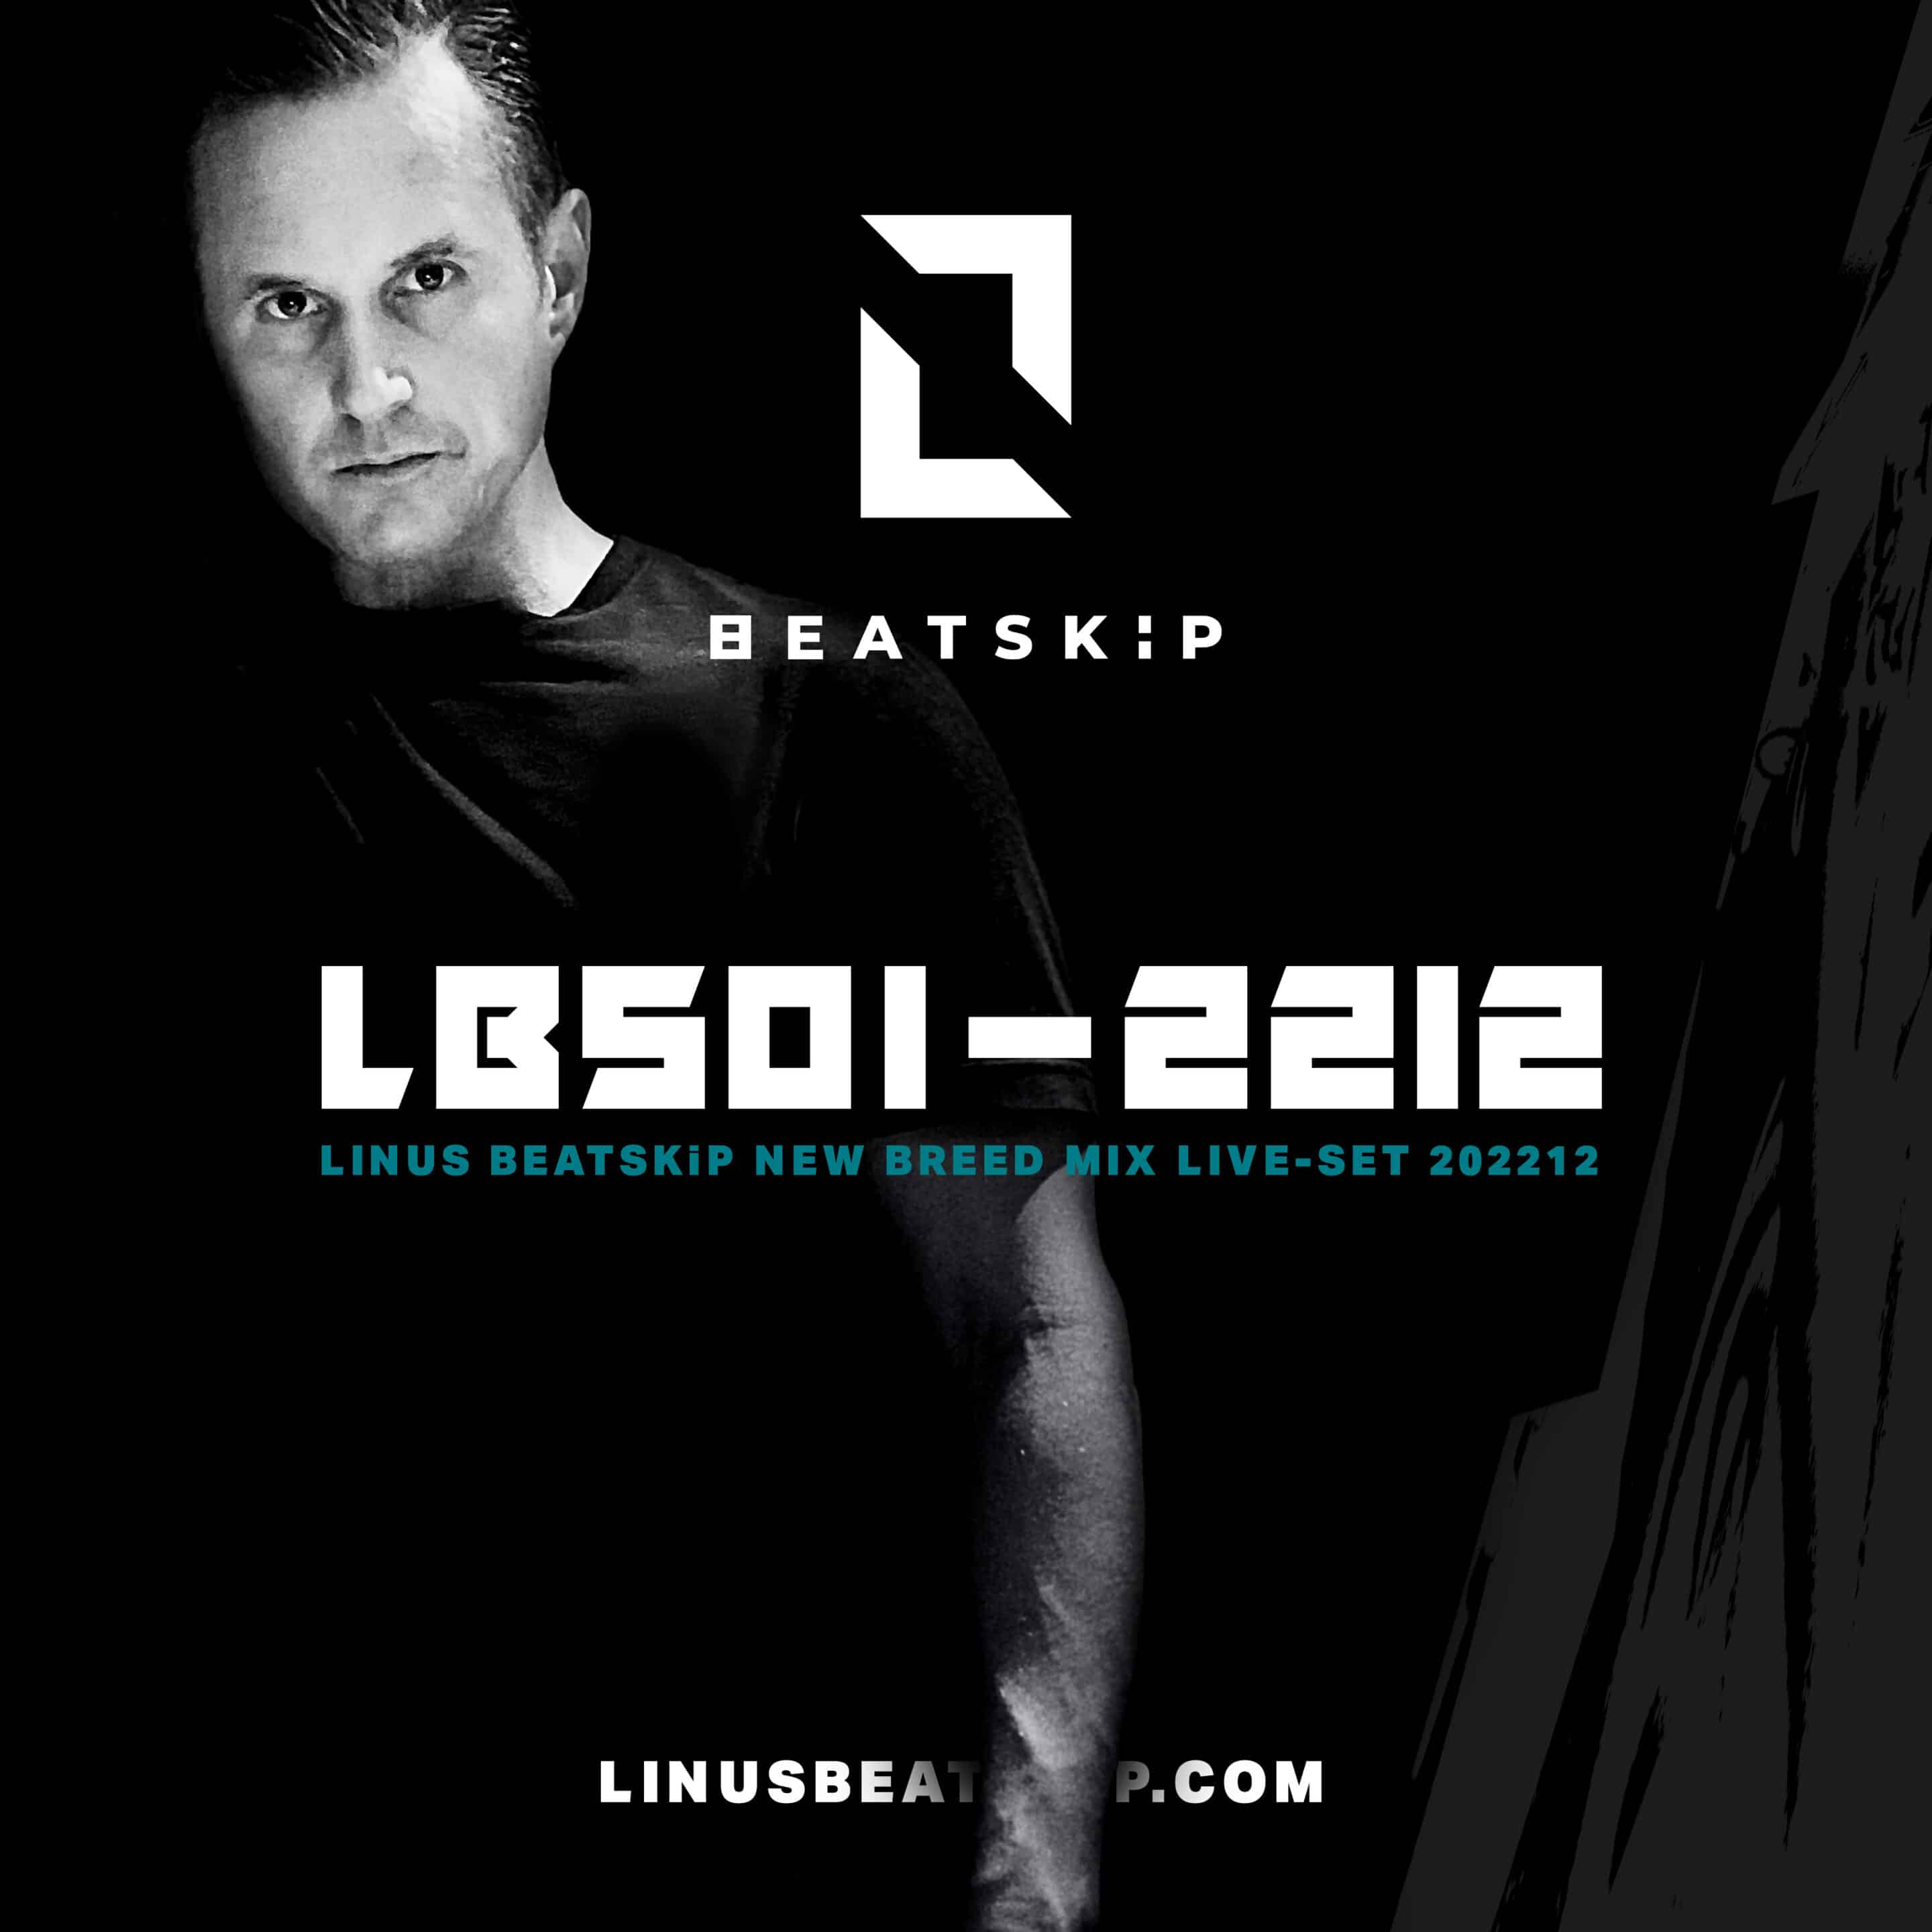 LBS01-2212 DJ Live Mix set from LINUS BEATSKiP